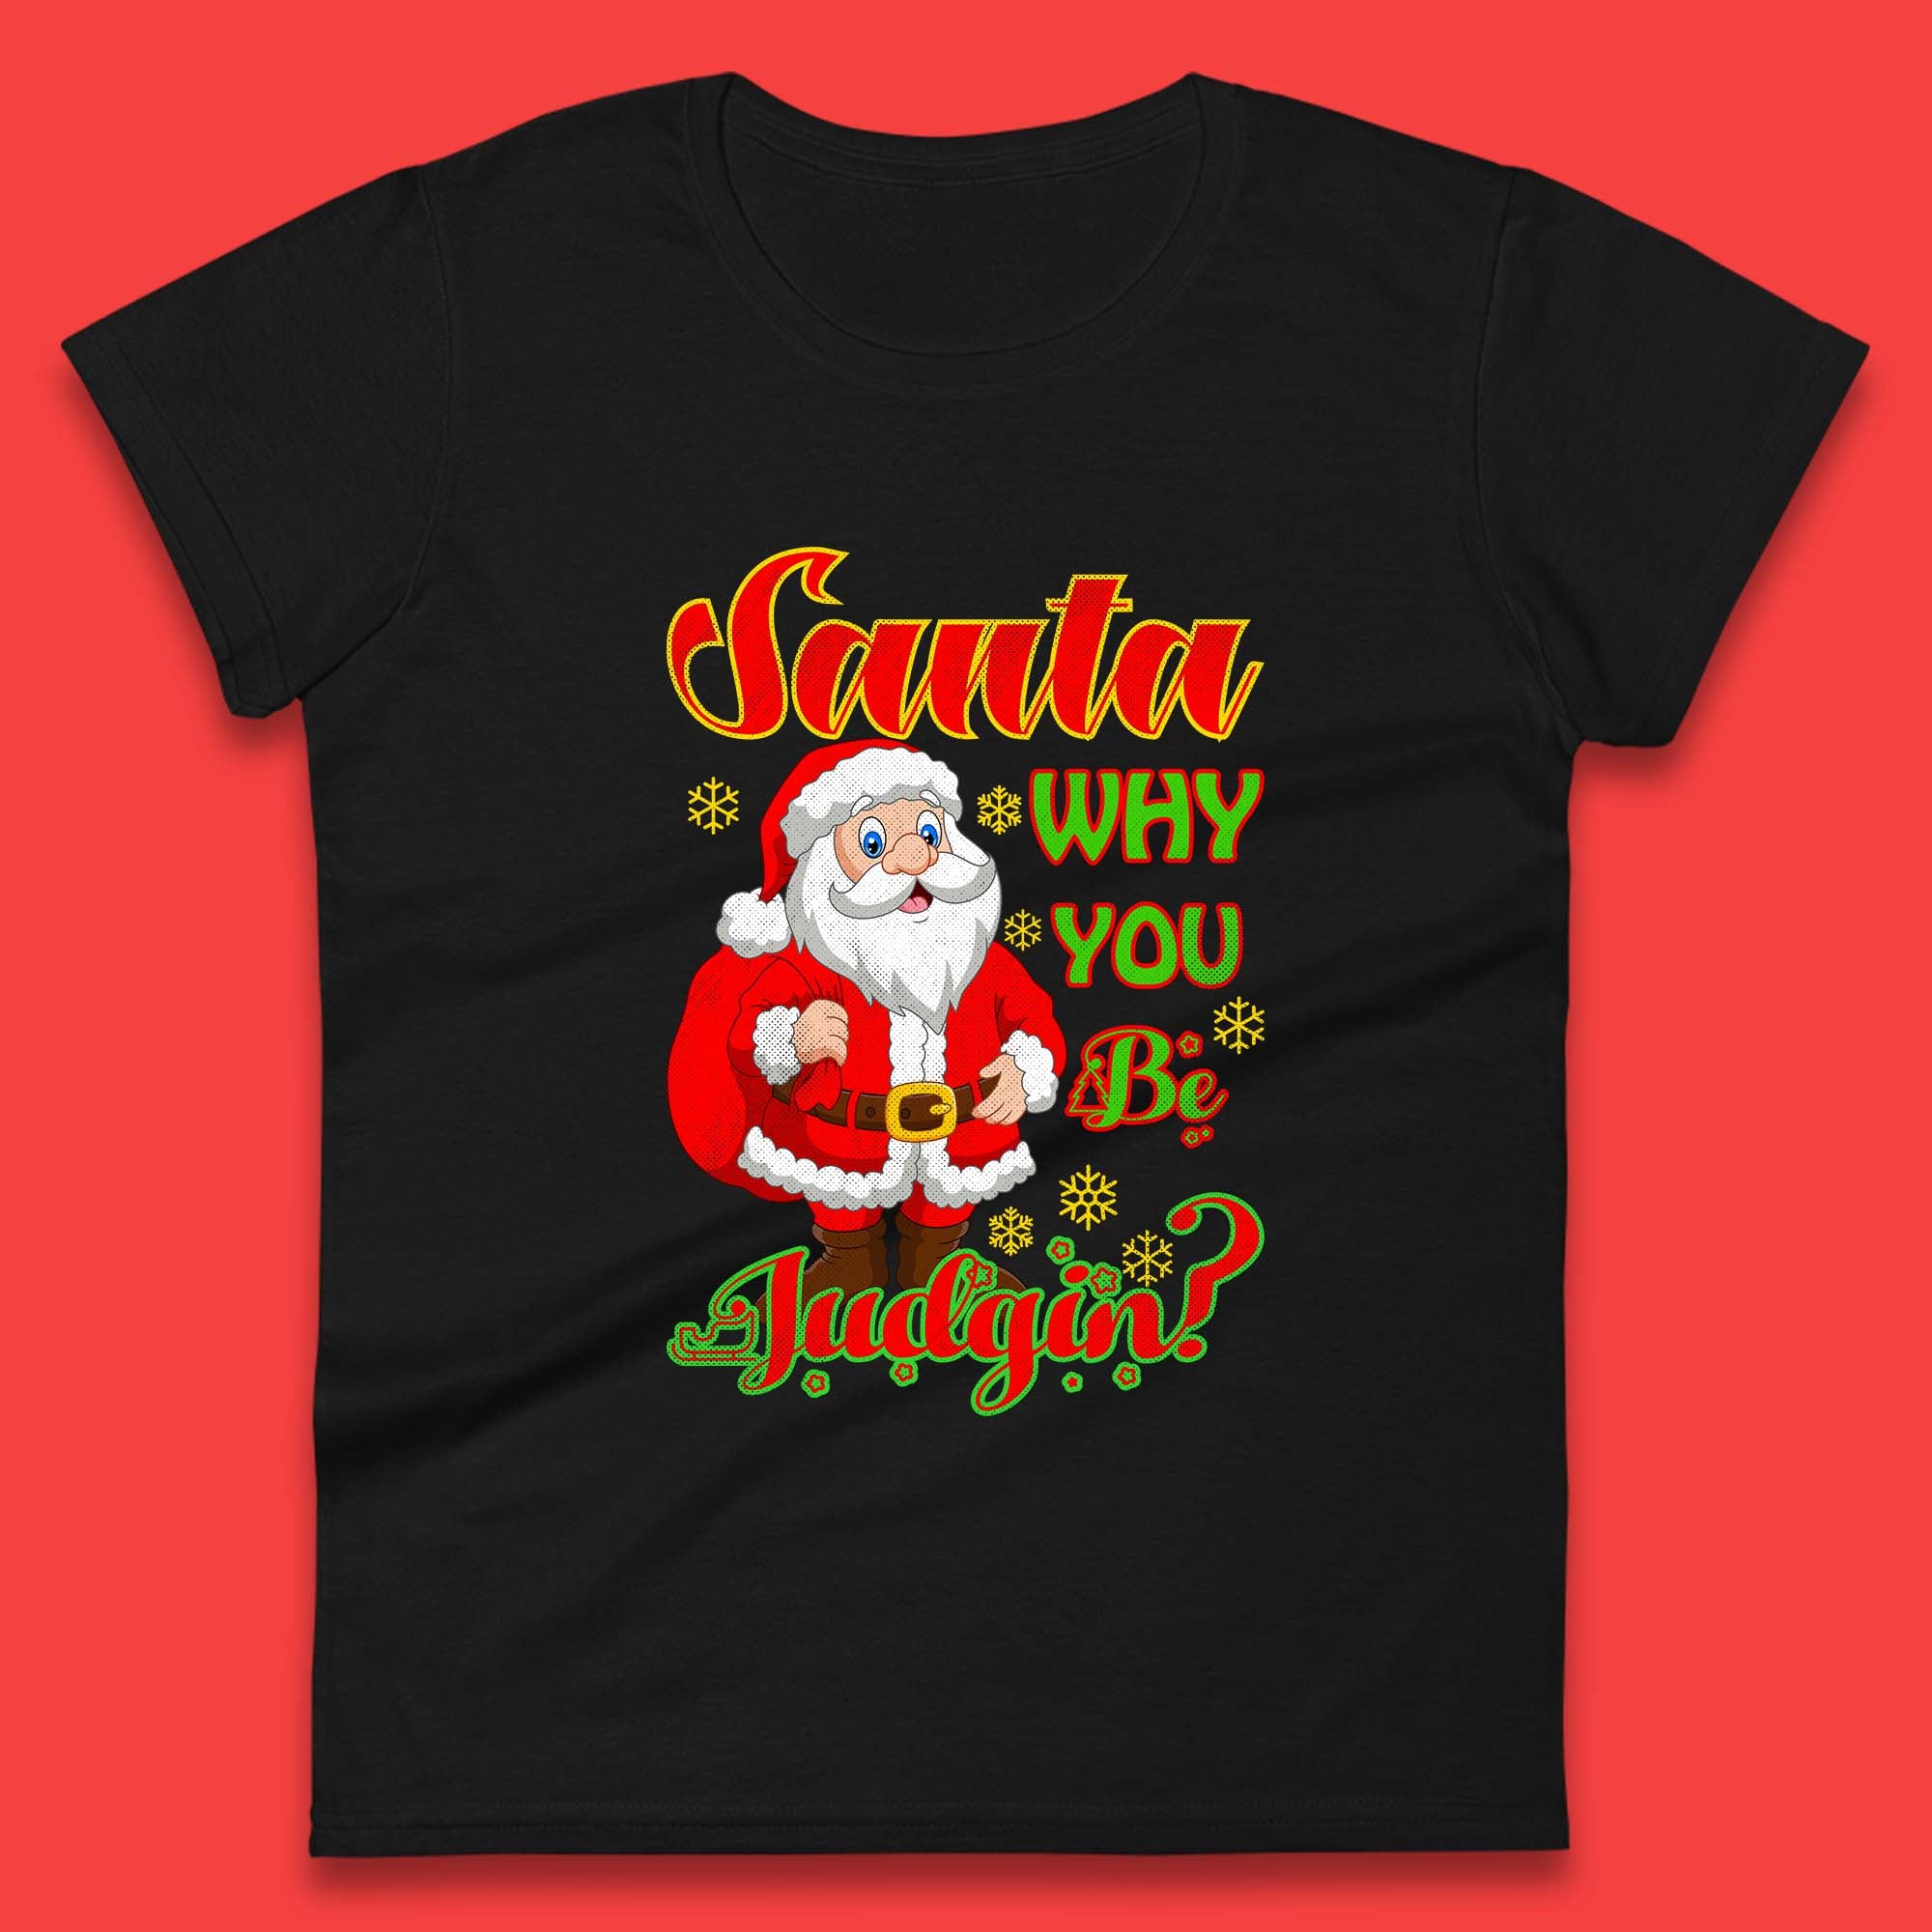 Santa Why You Be Judgin? Christmas Judging Funny Holiday Season Xmas Womens Tee Top